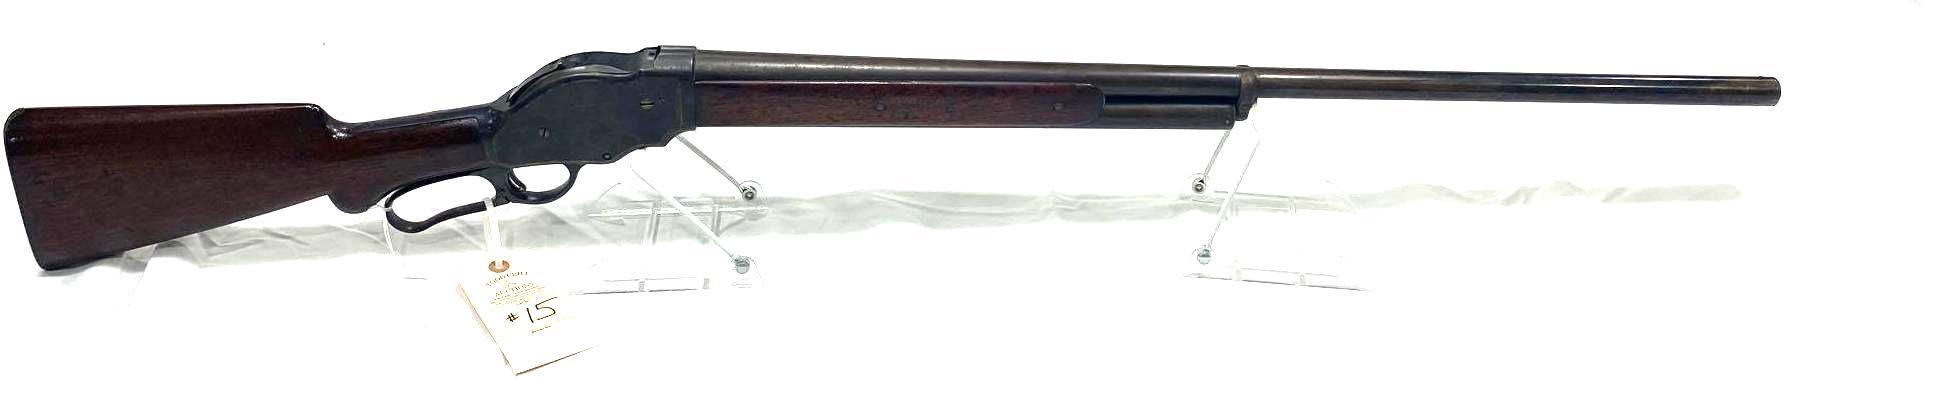 WINCHESTER M-1901 10 GA LEVER ACTION SHOTGUN